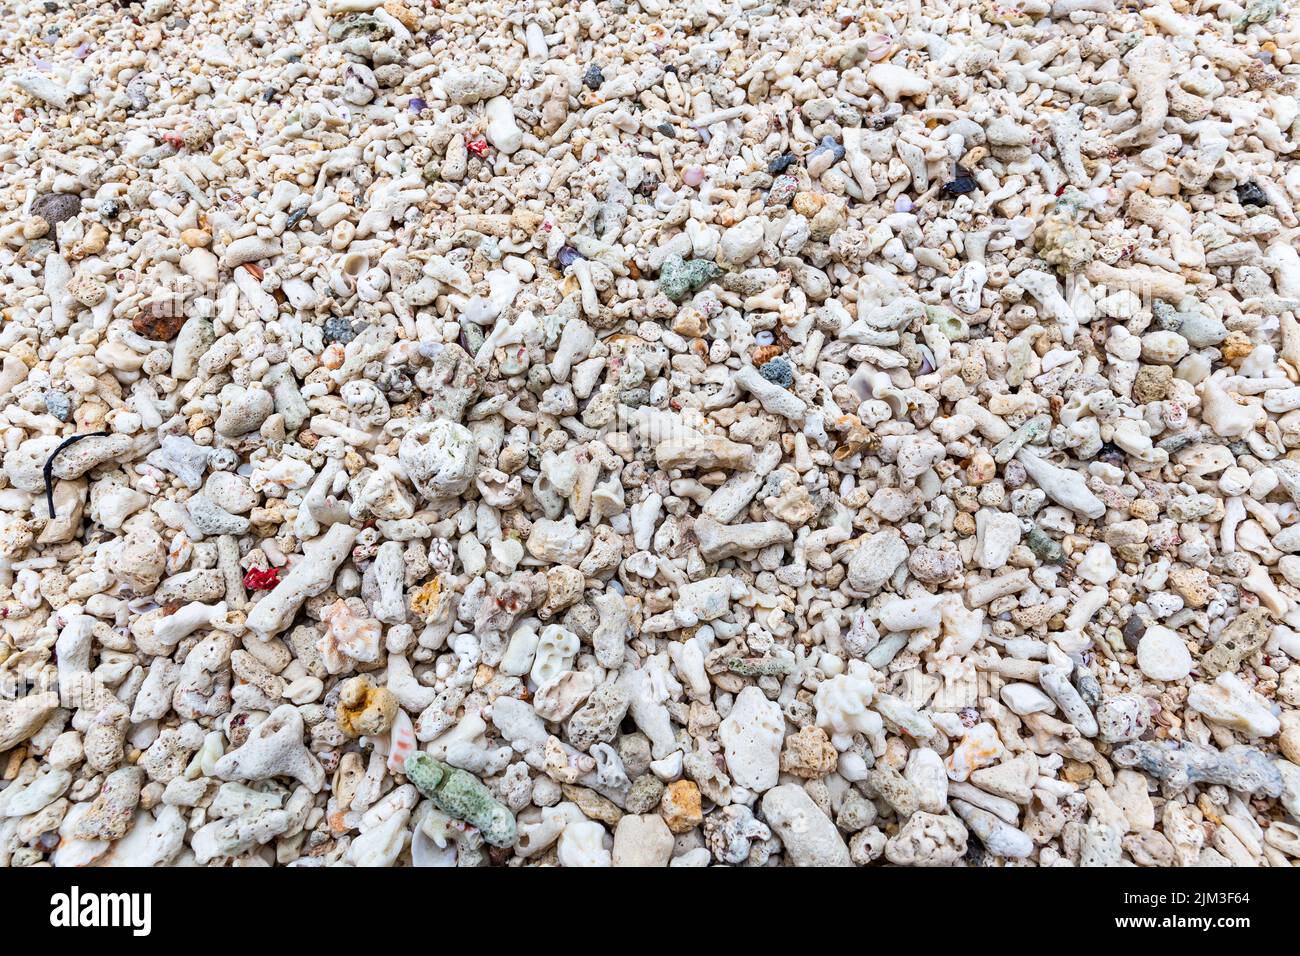 Nach einem Korallenbleichungsereignis auf Mahe Island, Seychellen, wurden an einem Strand Stücke von toten, gebleichten Korallenriffs ausgewaschen. Stockfoto